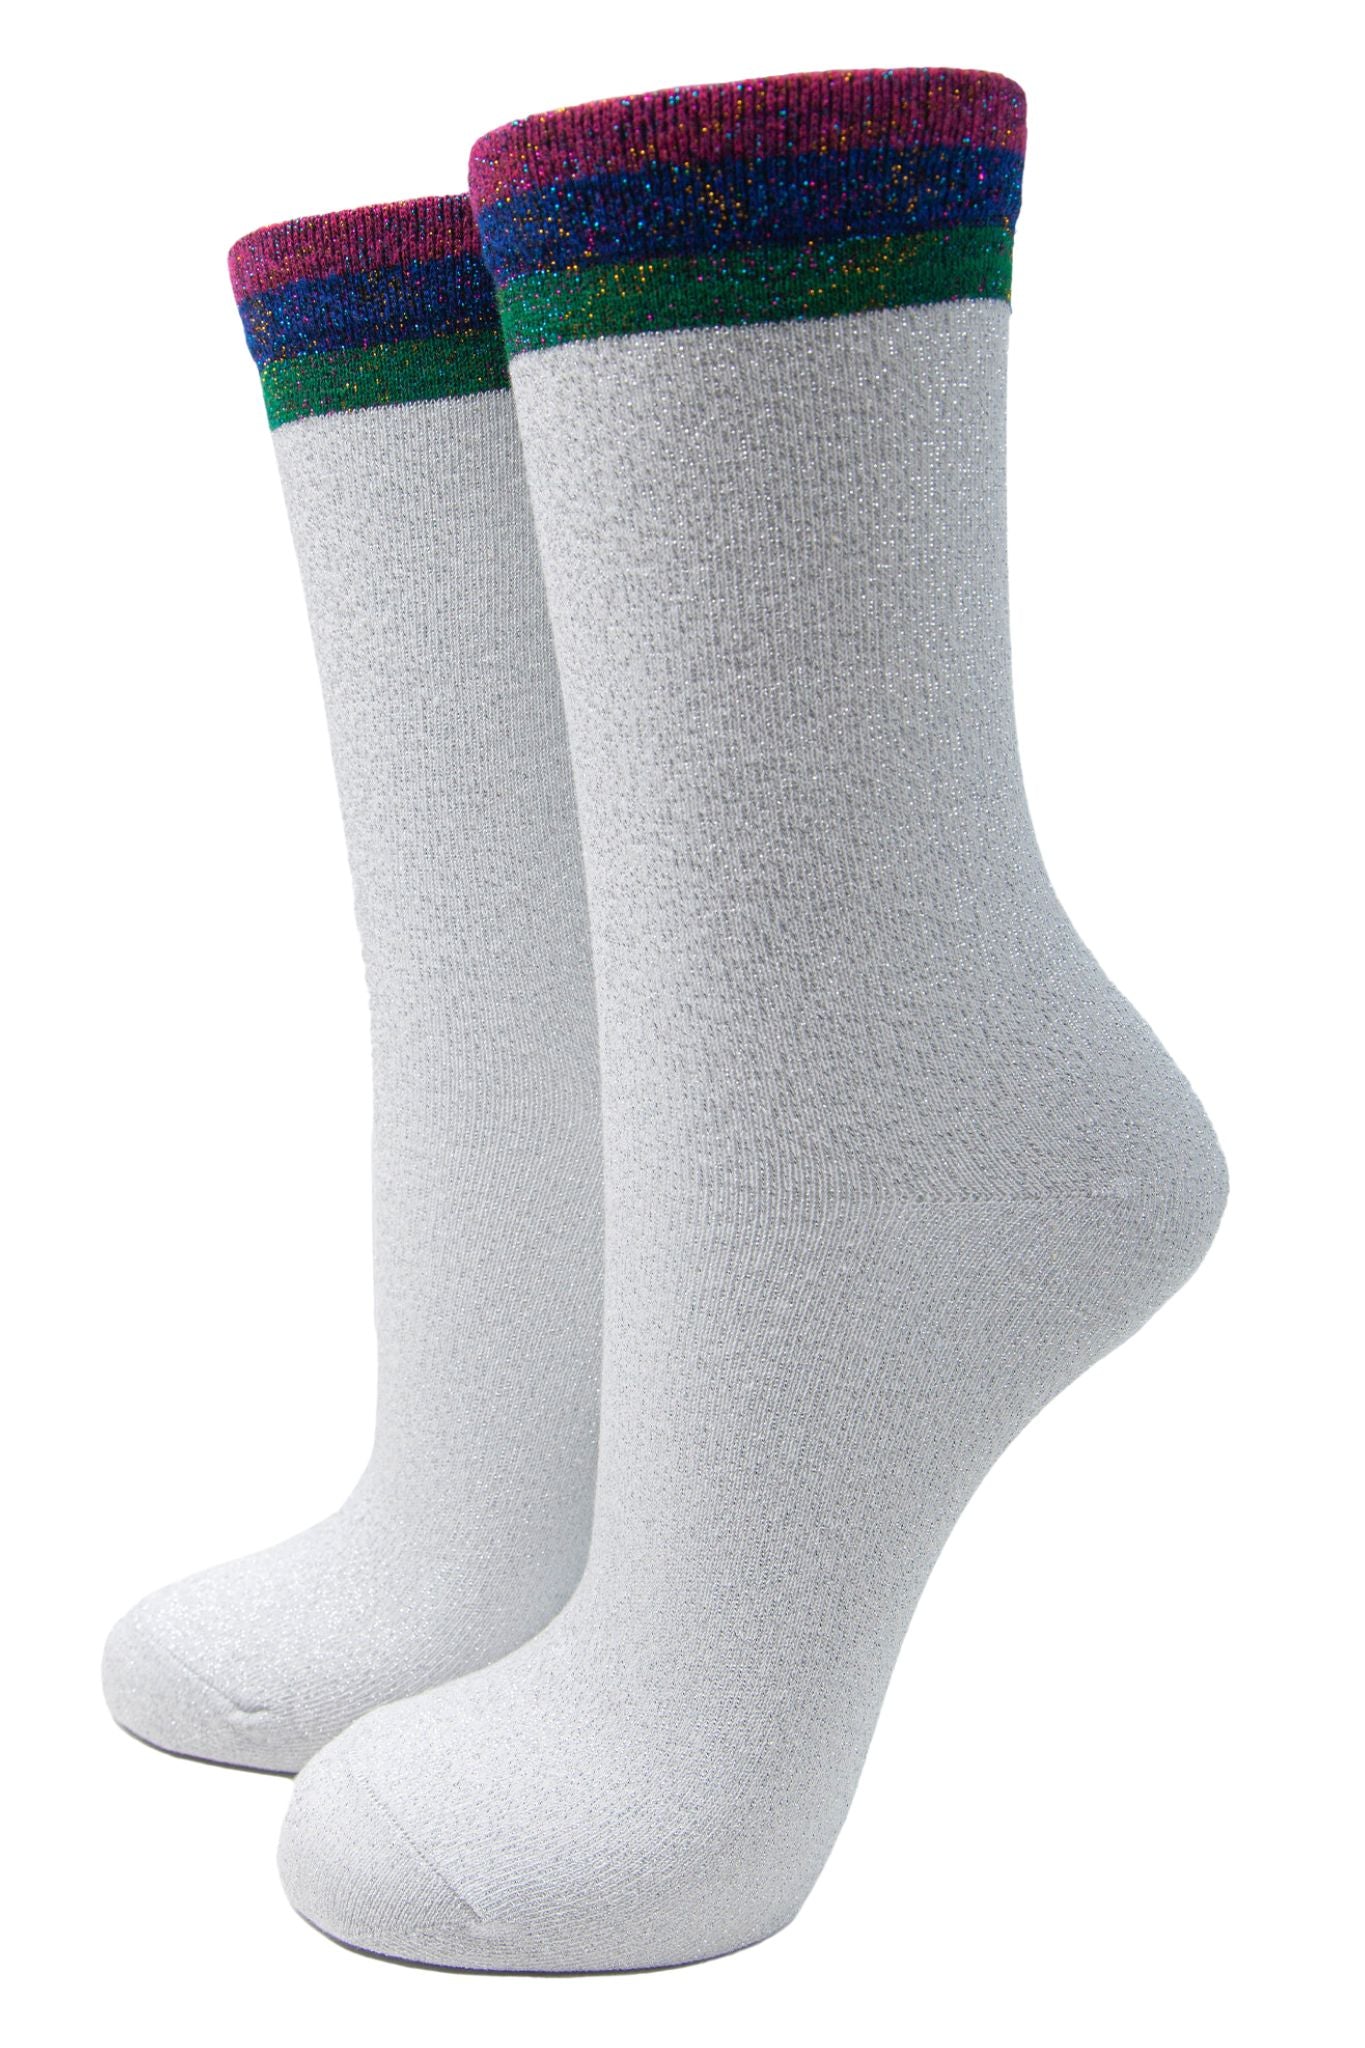 white glitter socks with a multicoloured striped cuff